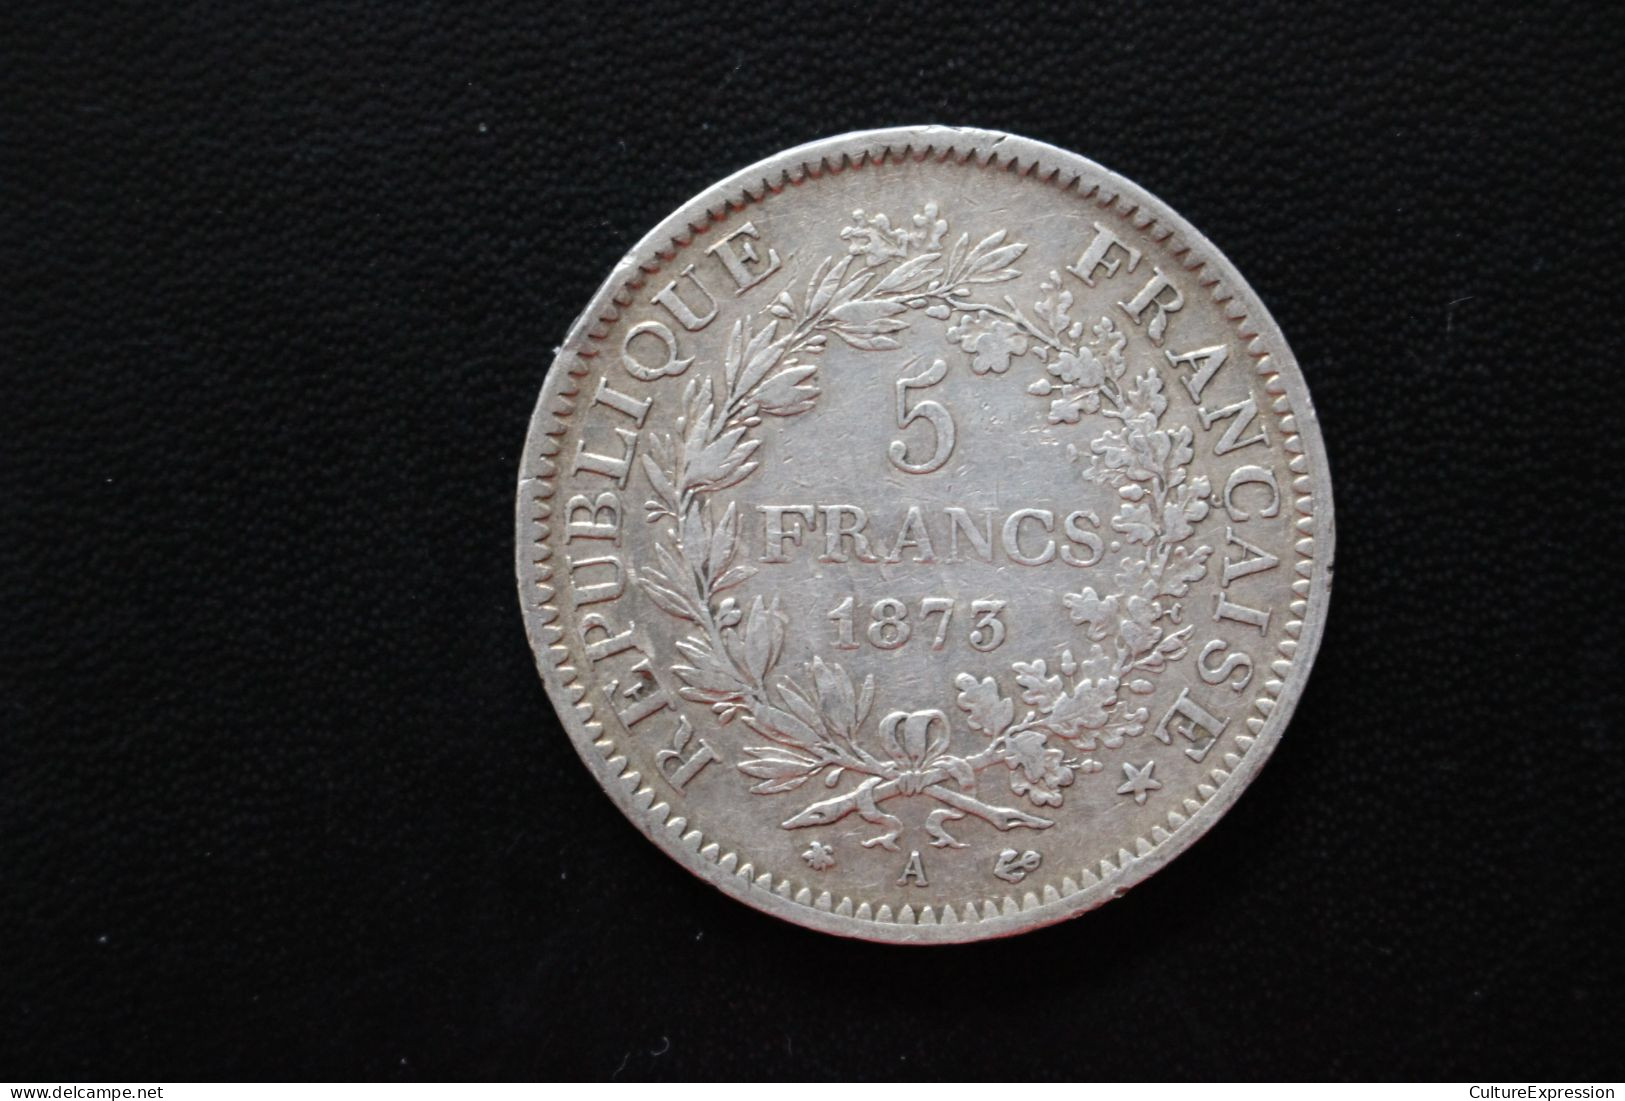 Pièce Argent 5 Francs Hercule IIIe République (Augustin Dupré) - 1873 A - 5 Francs